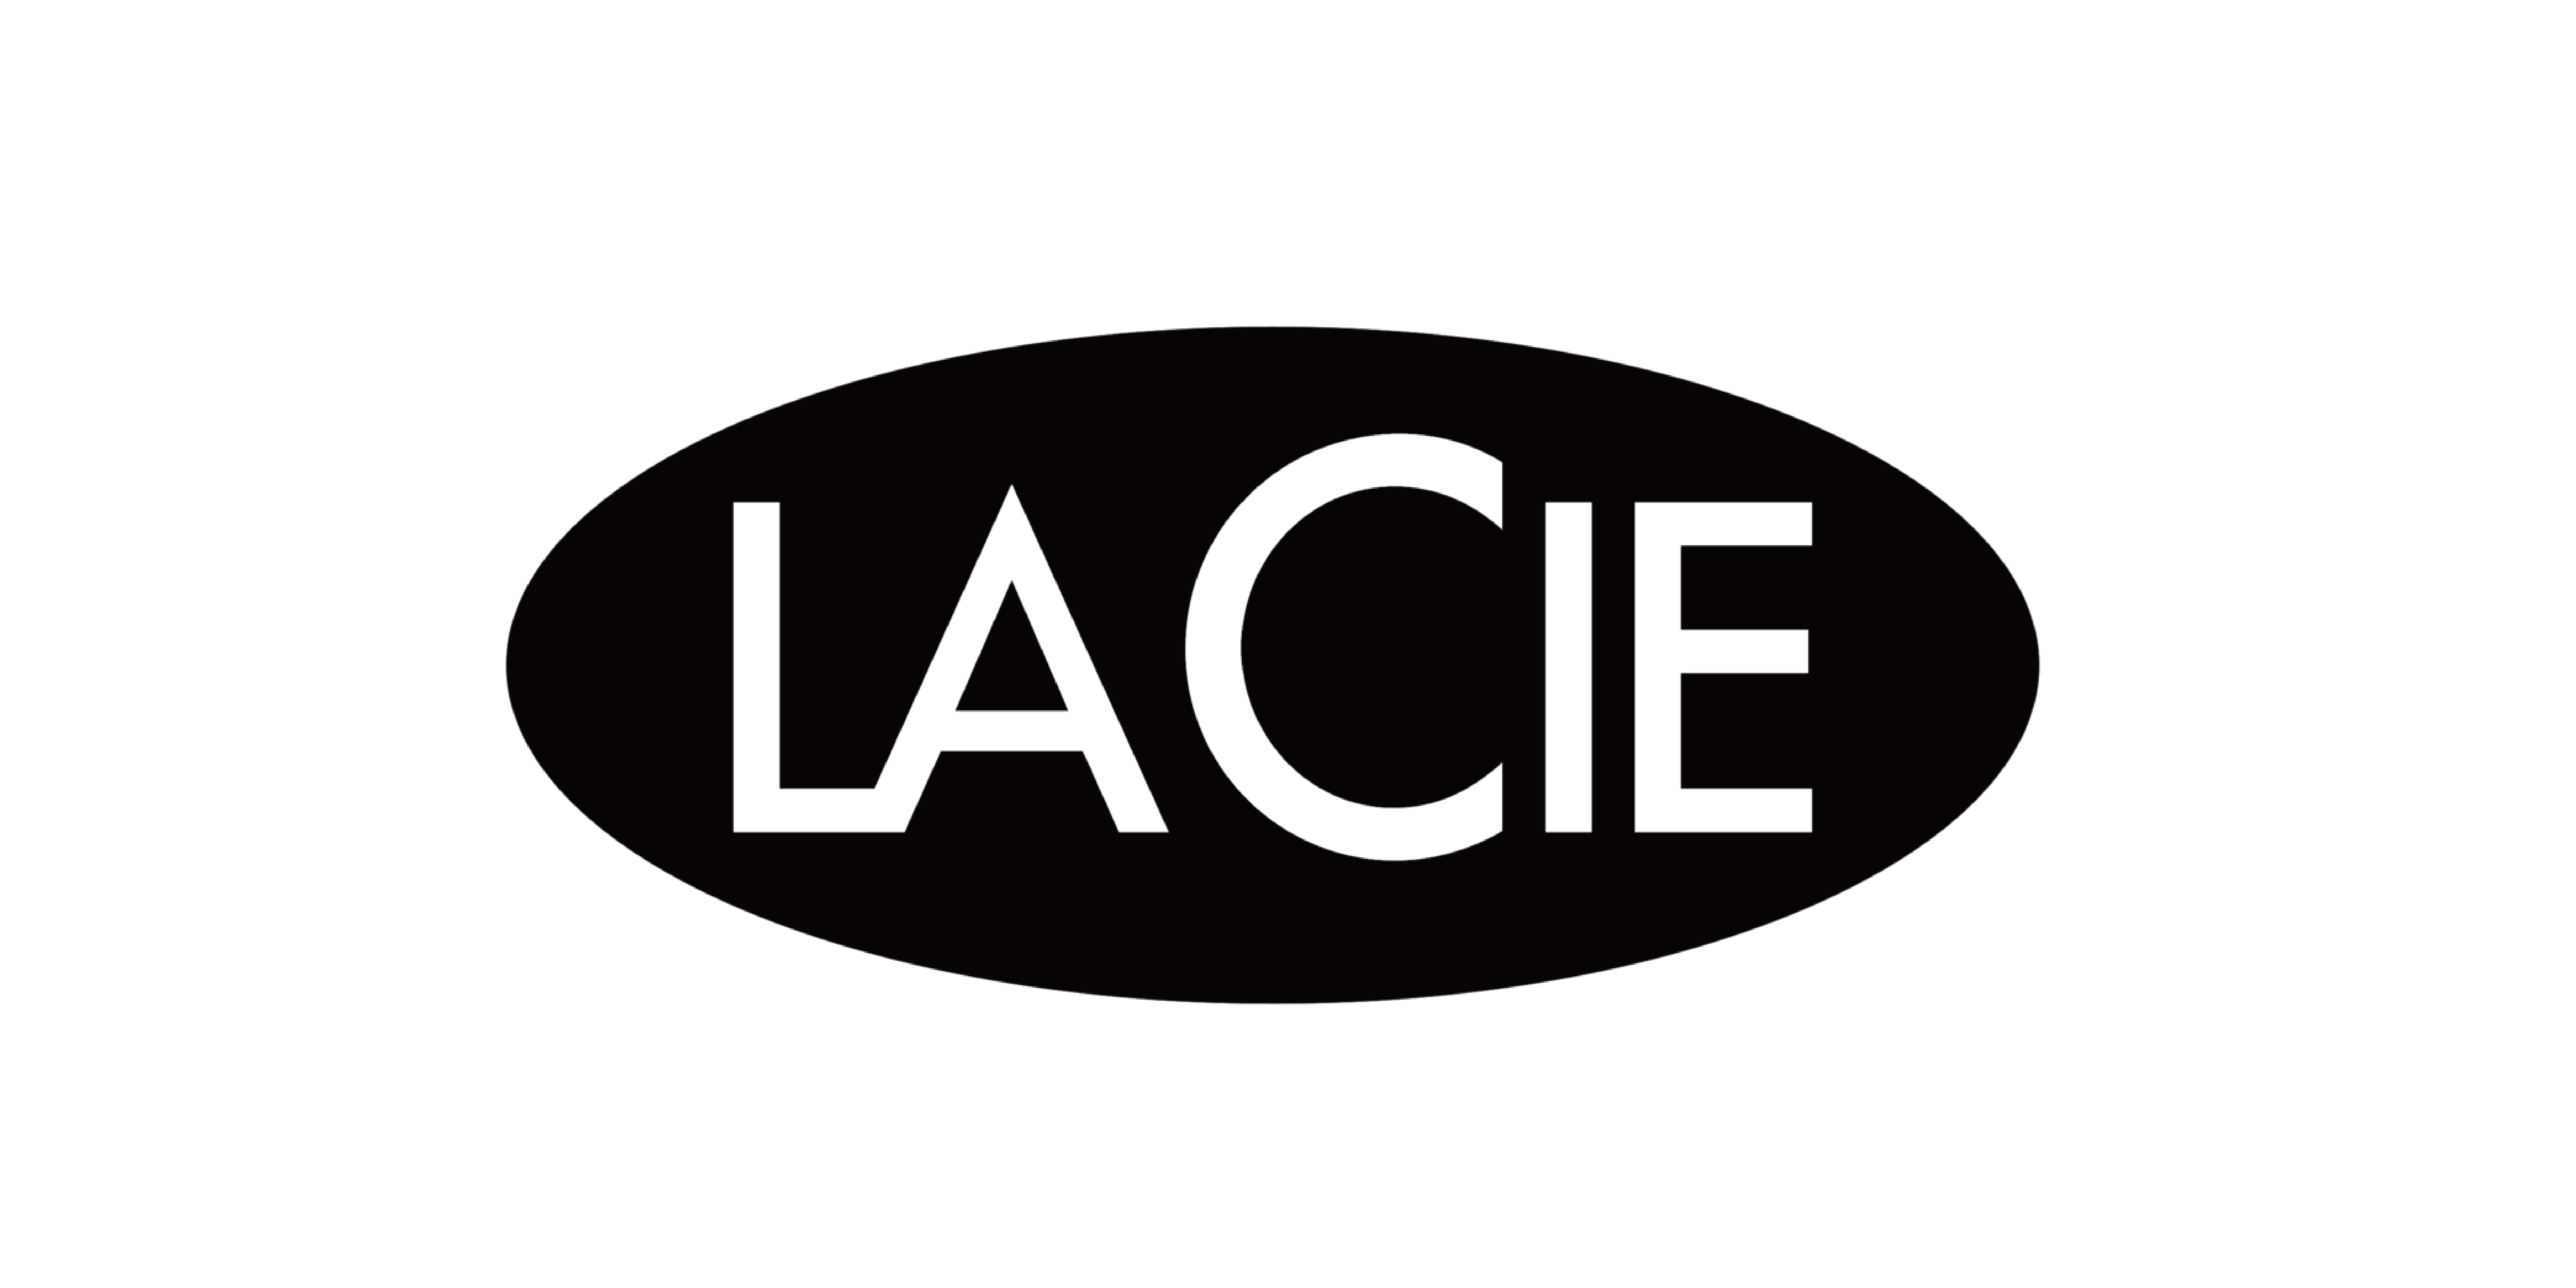 lacie_logo_工作區域 1